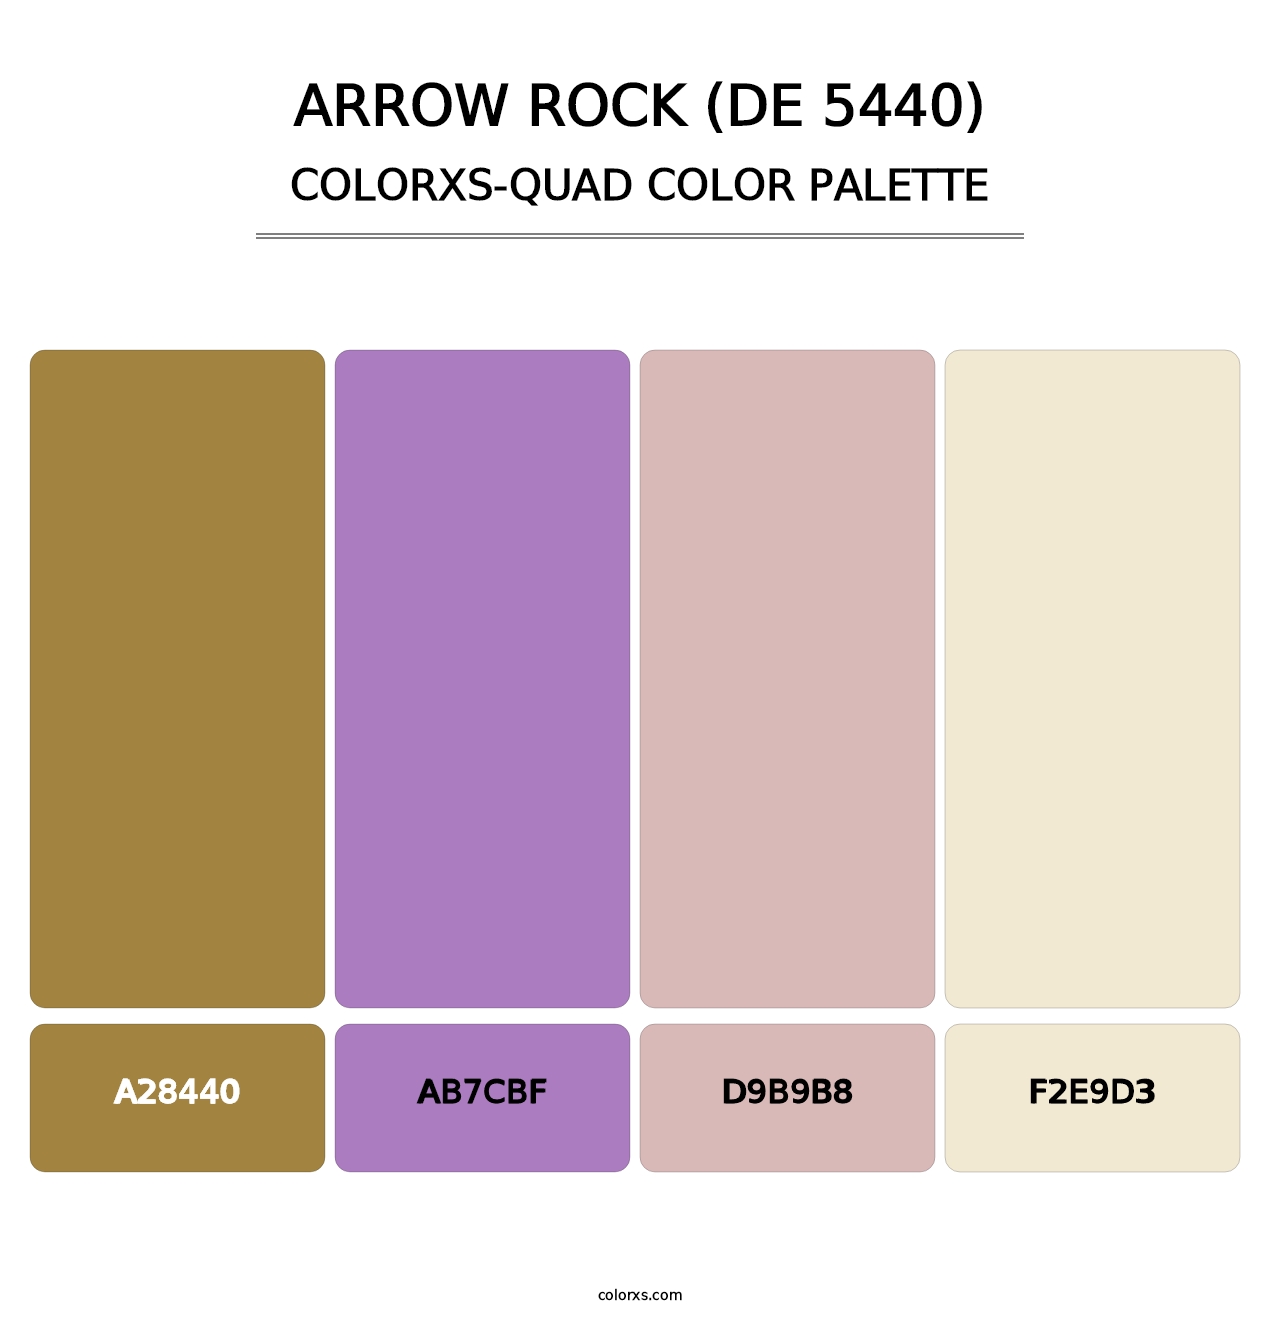 Arrow Rock (DE 5440) - Colorxs Quad Palette